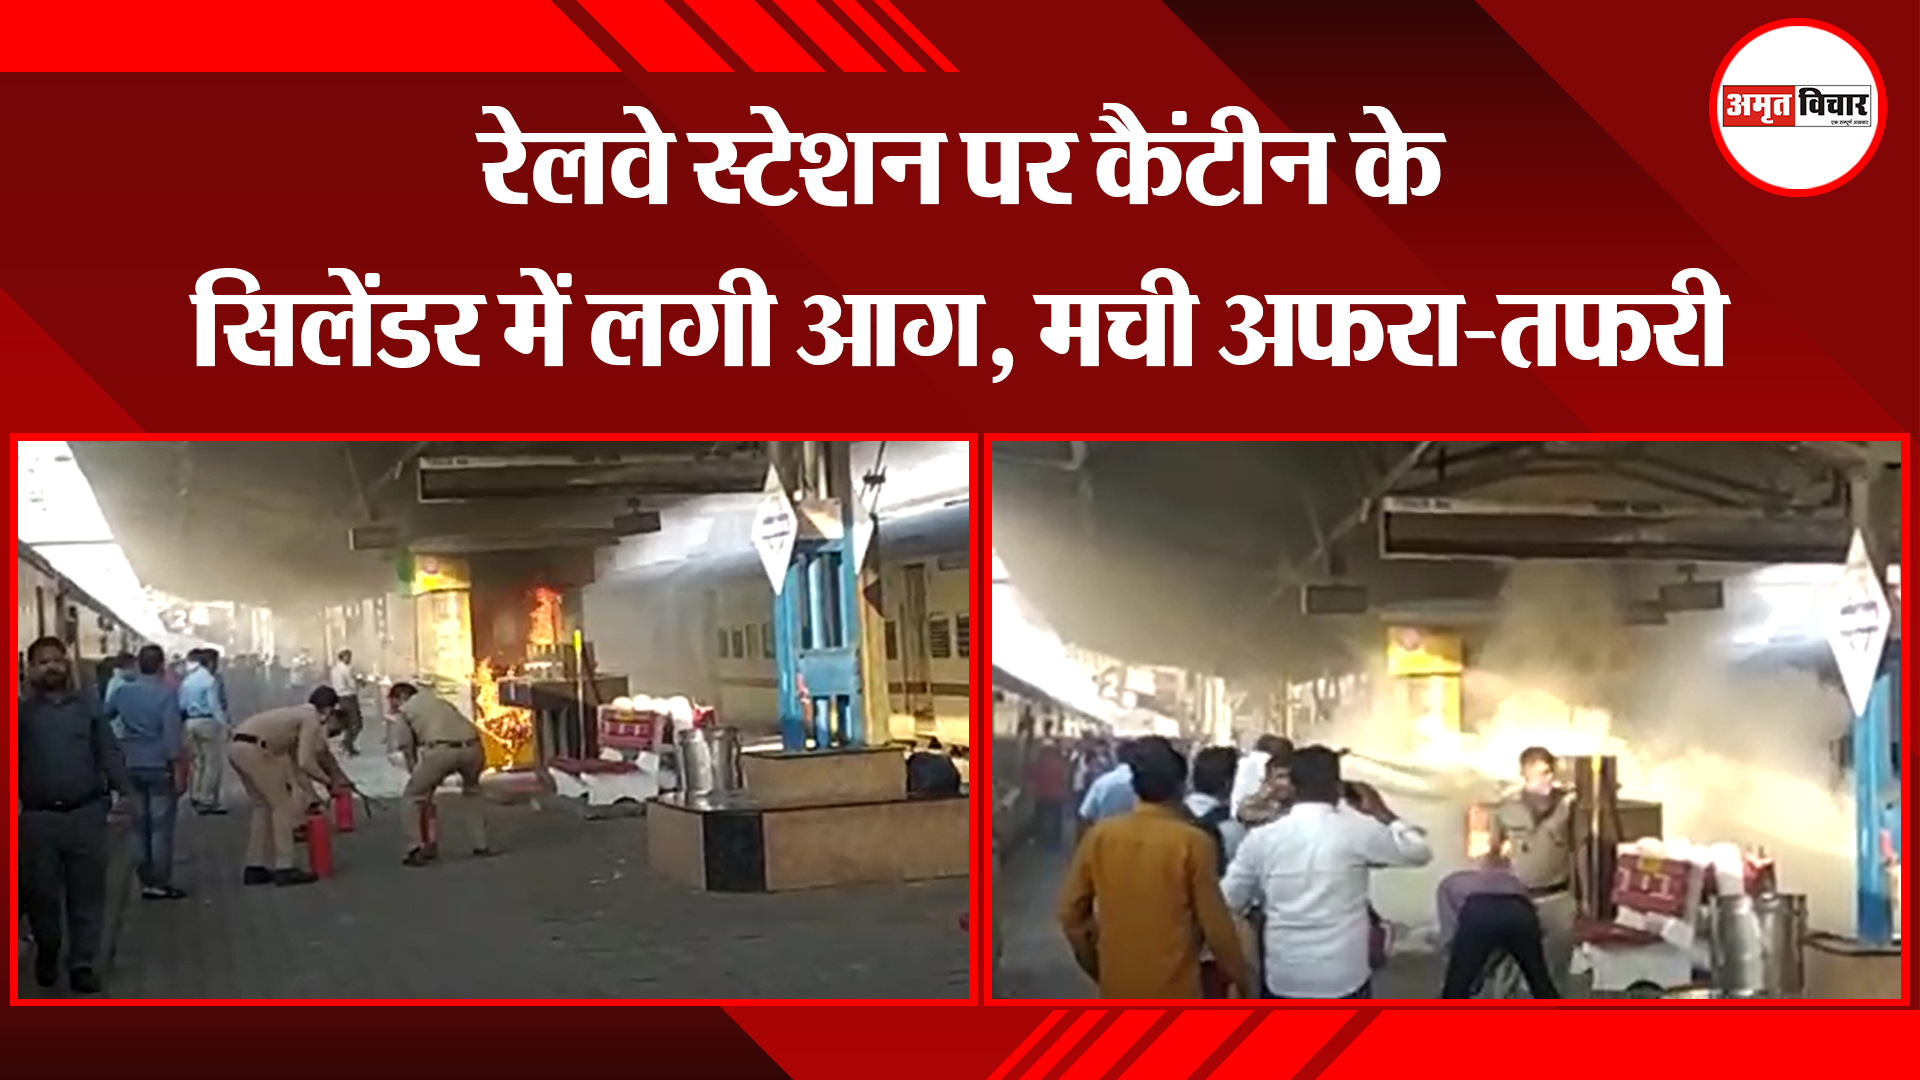 कासगंज: रेलवे स्टेशन पर कैंटीन के सिलेंडर में लगी आग, मची अफरा-तफरी